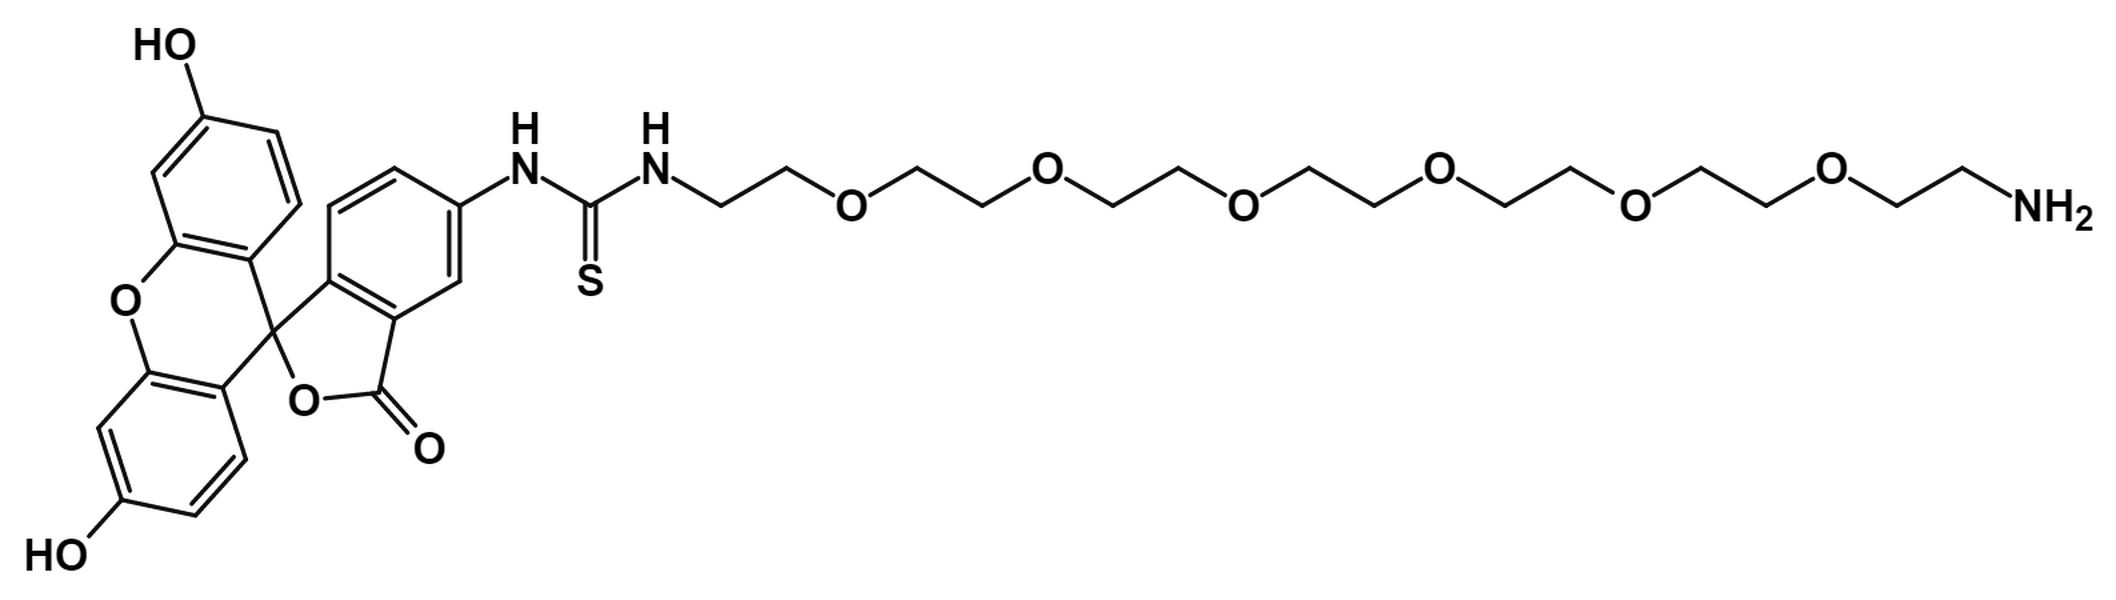 Fluorescein-PEG6-Amine